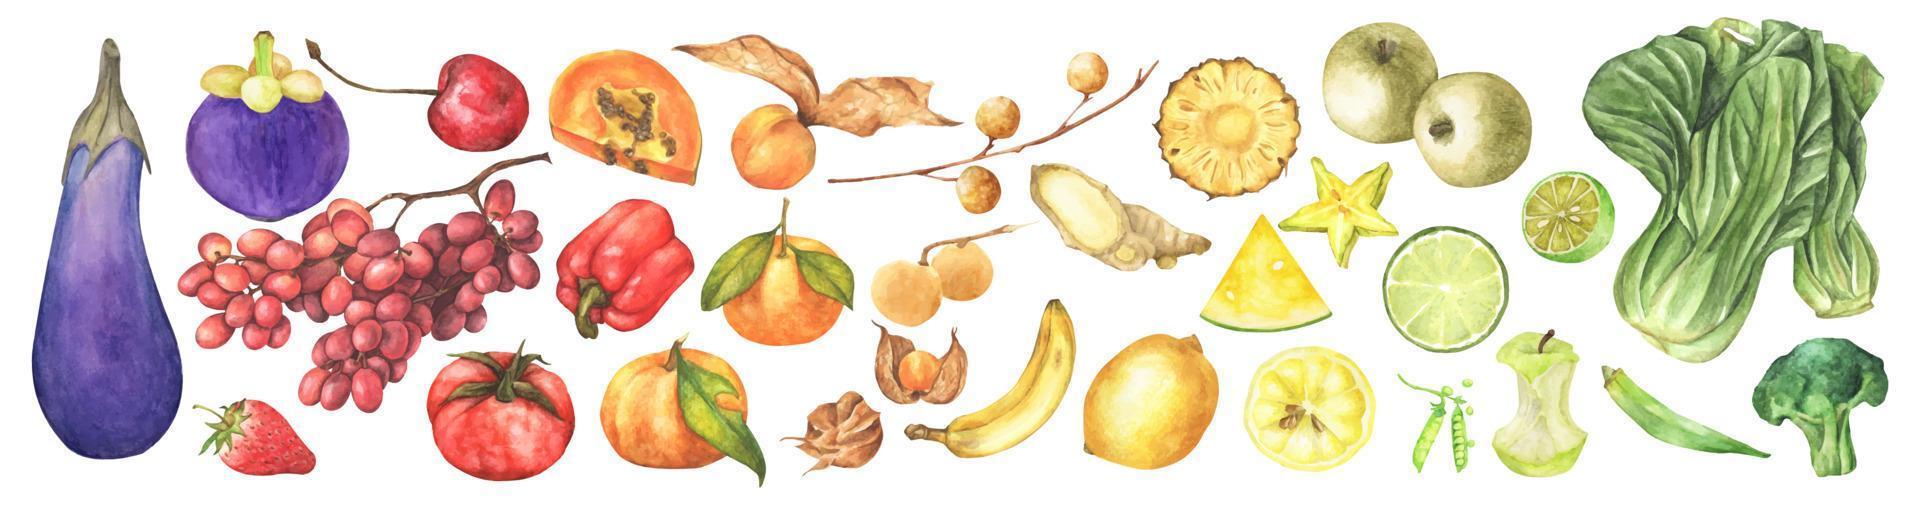 verse groenten, fruit en superfood. aquarel illustratie. vector